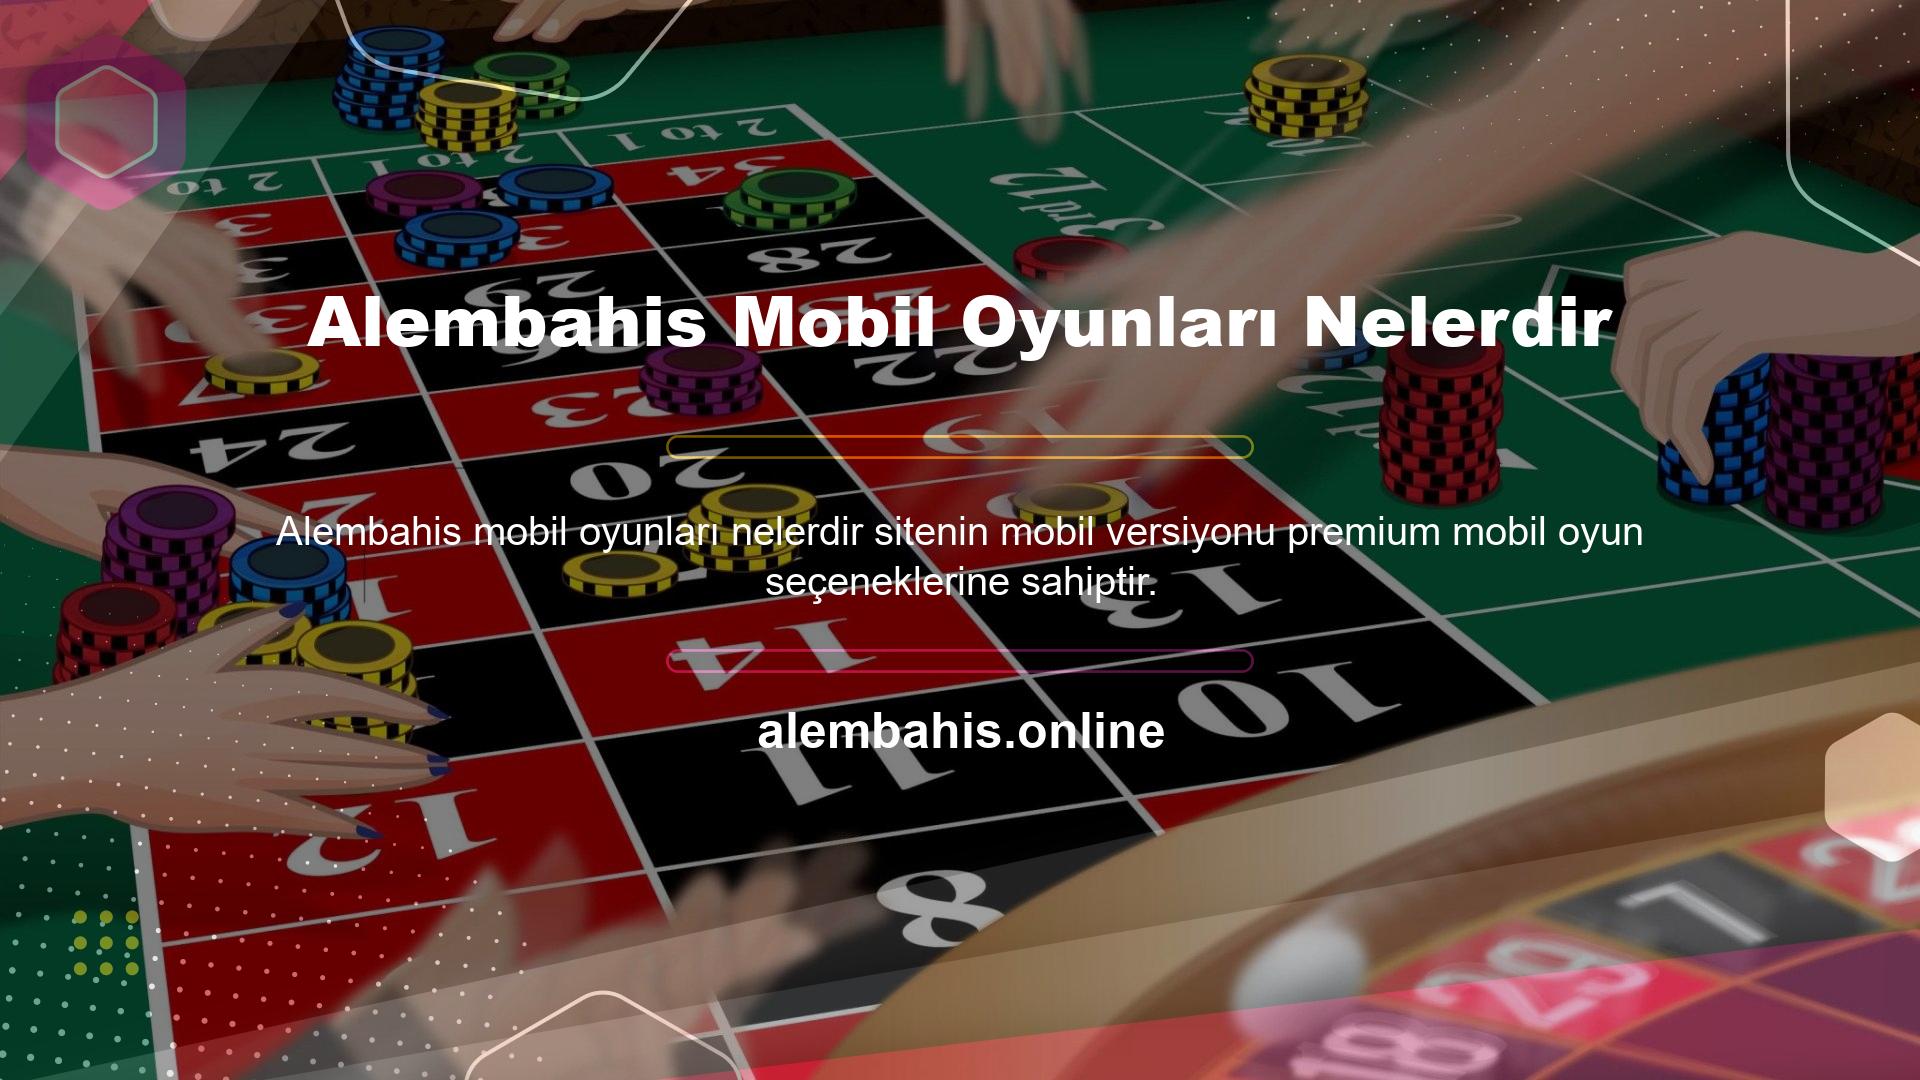 Mobil casinoların ana türlerinden biri spor bahisleridir